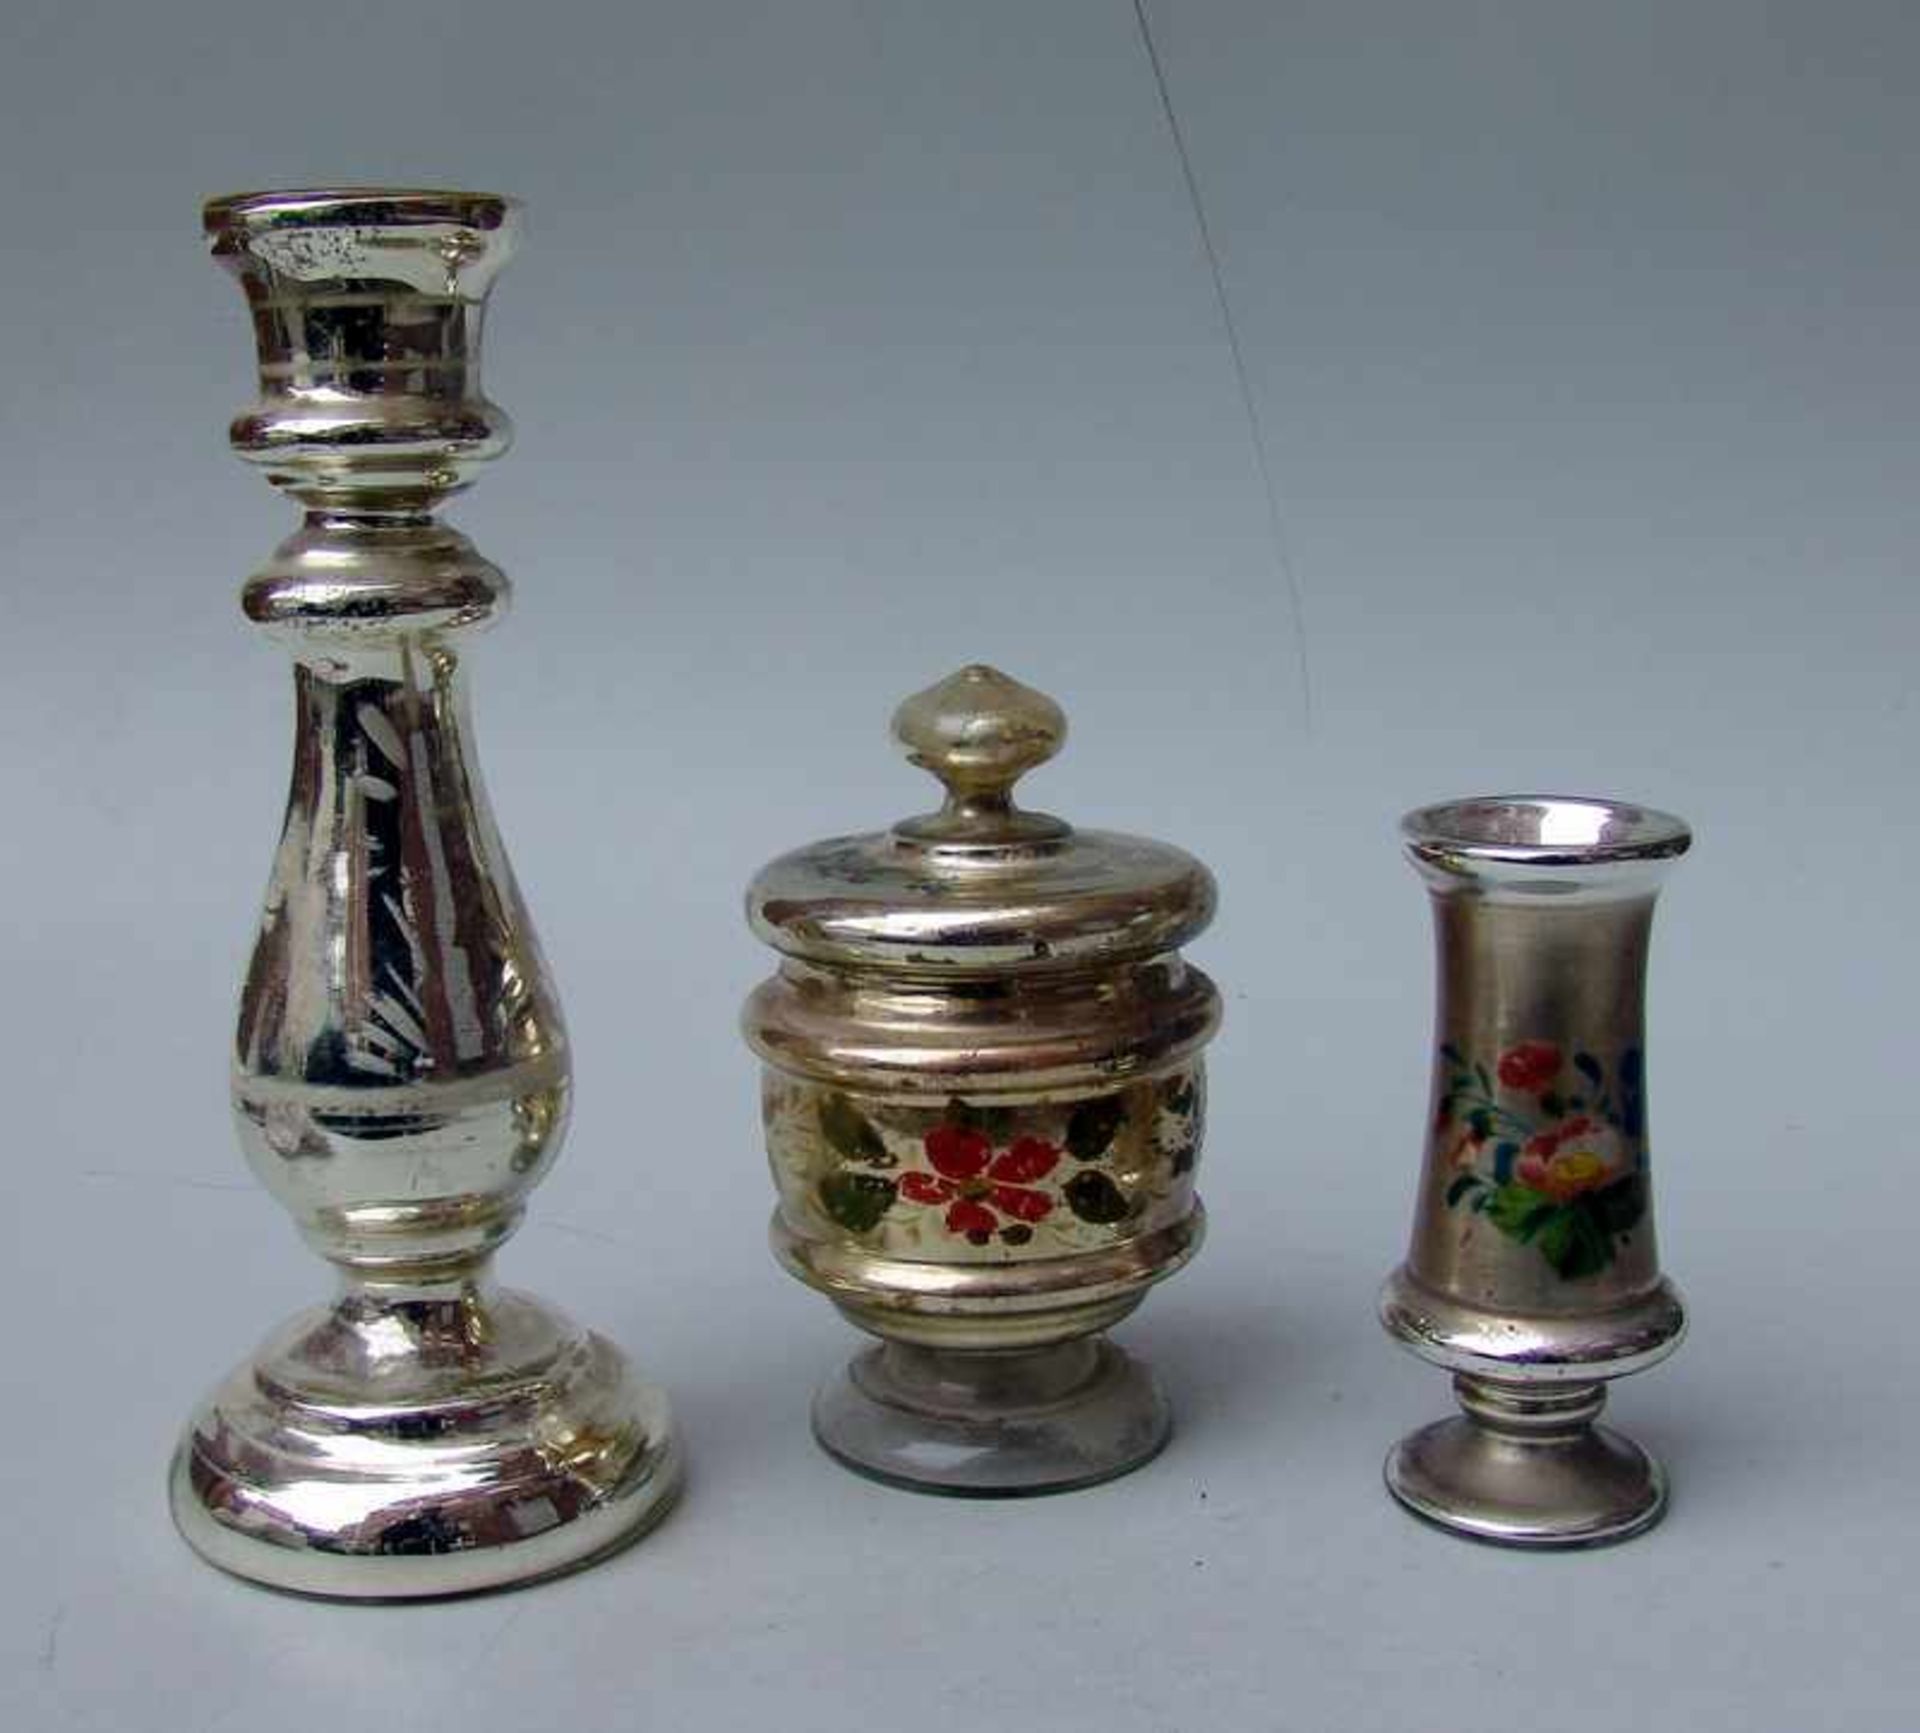 Sammlung Bauernsilber/Silberglas, 19.Jhd., 3 Teile in Holzmodeln geblasenes Glas mit